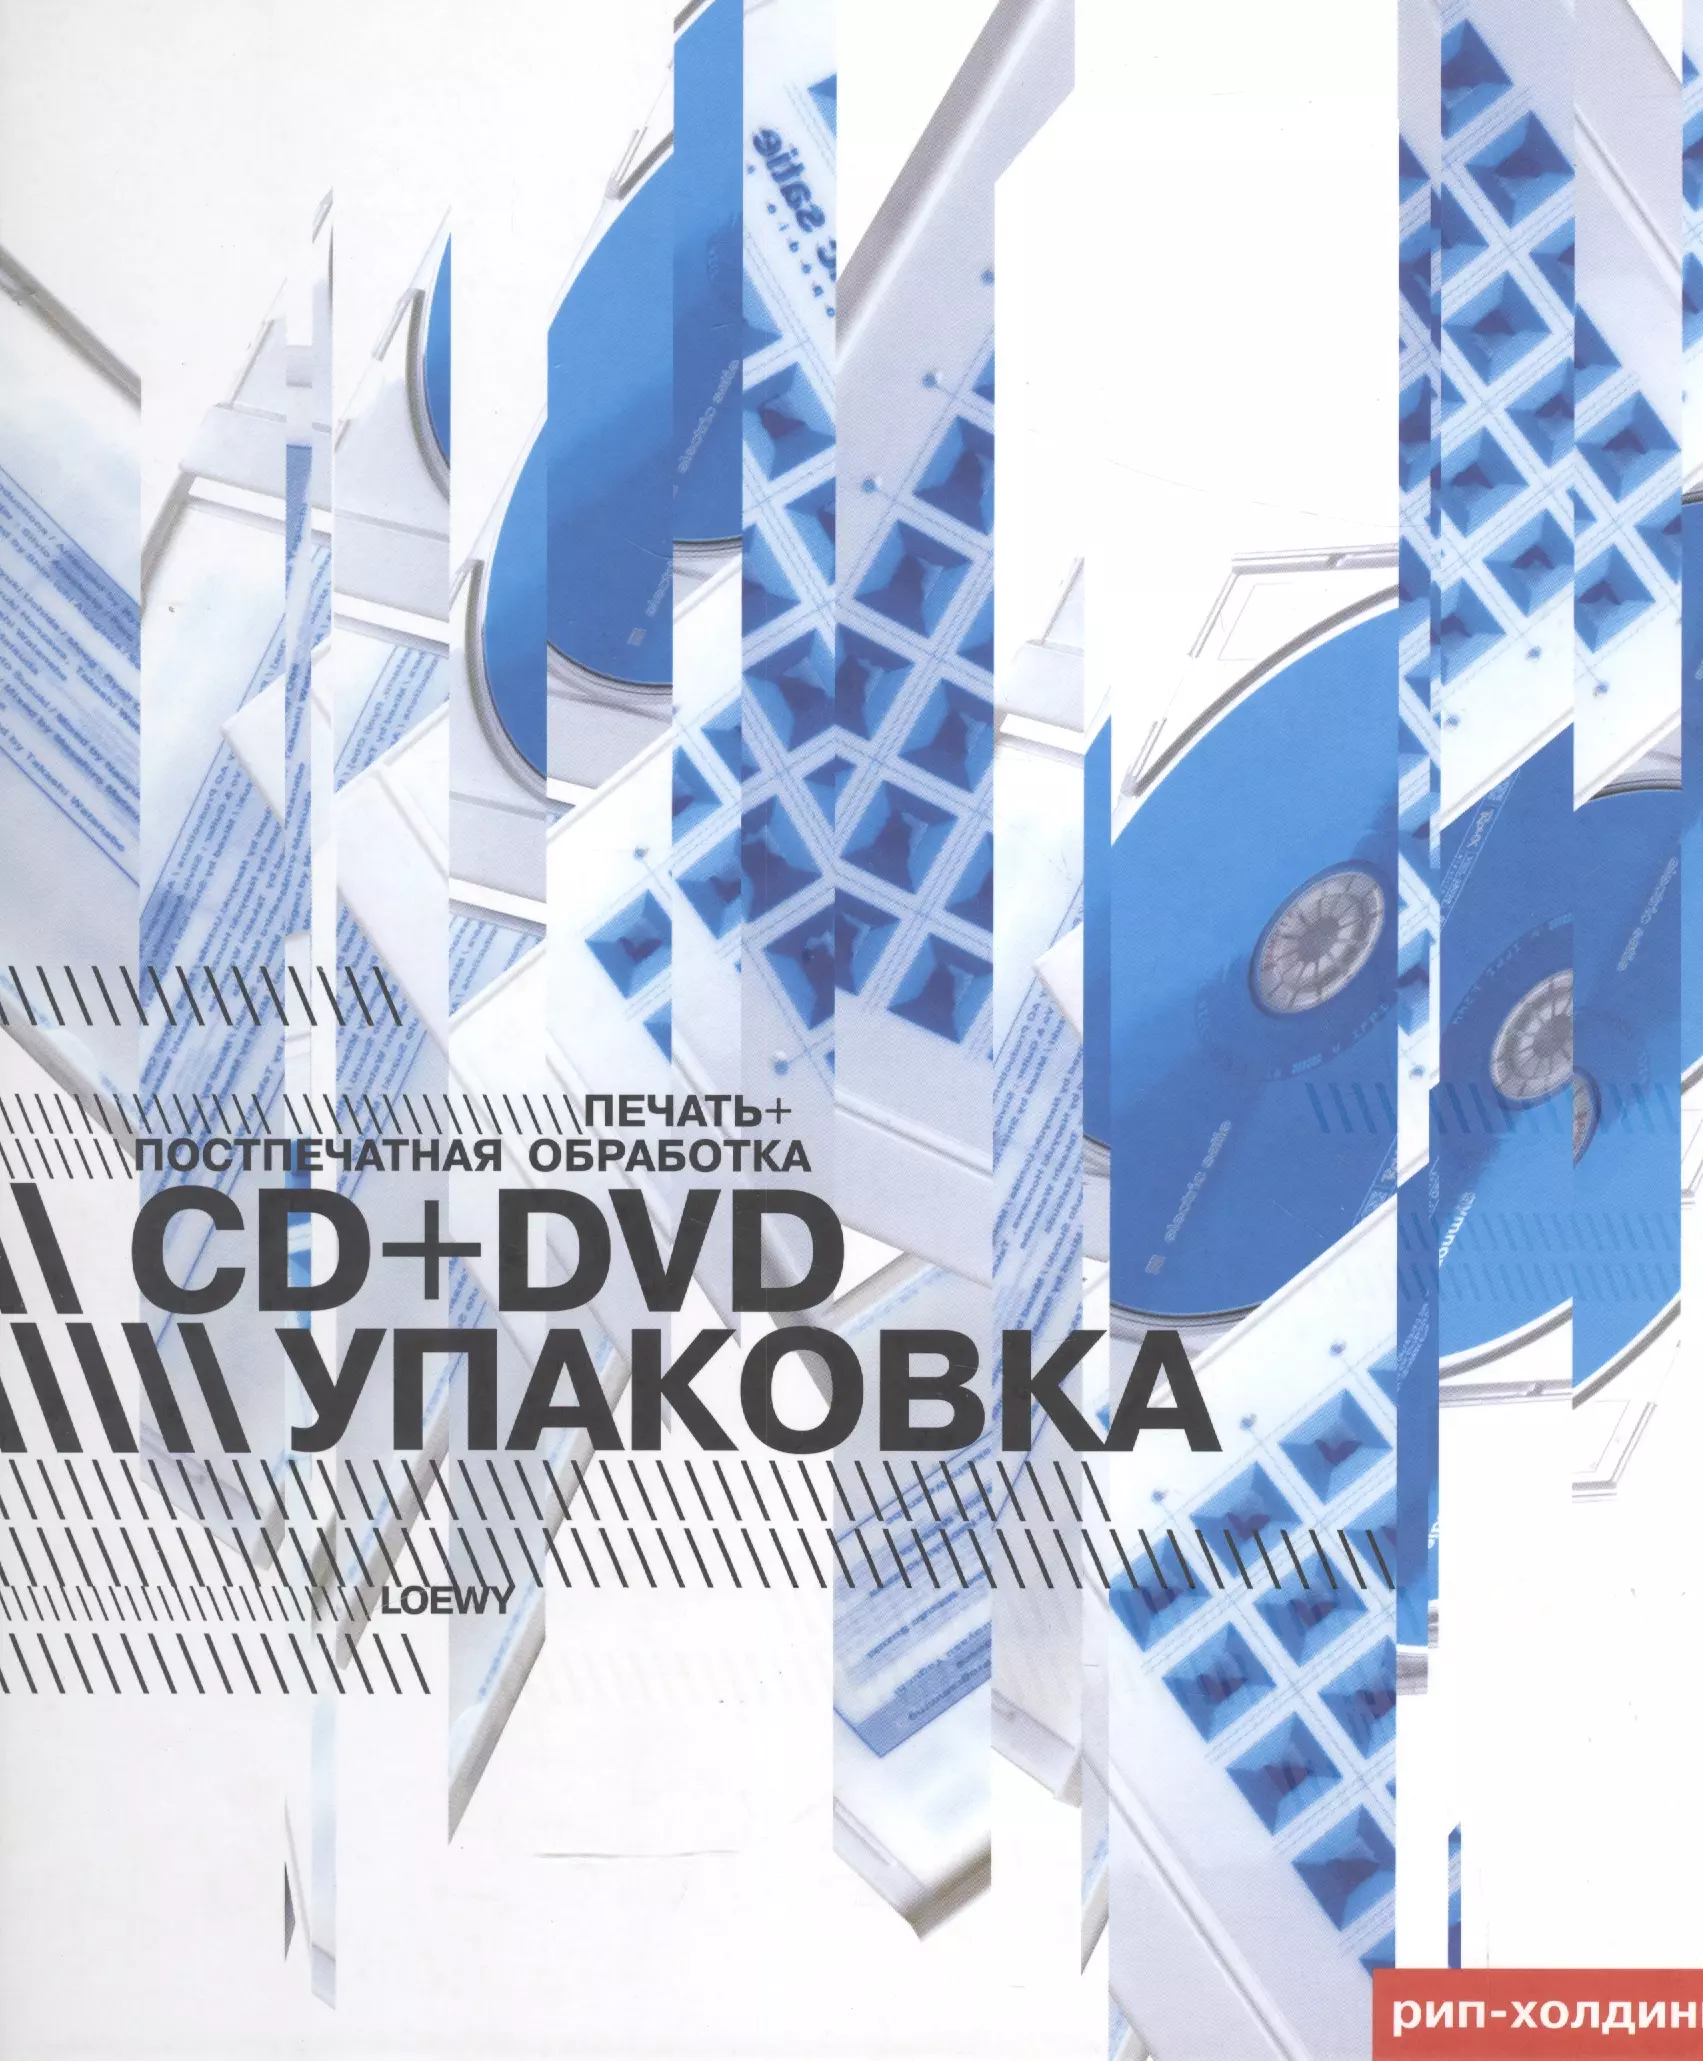  - CD+DVD упаковка. Печать+Поспечатная обработка